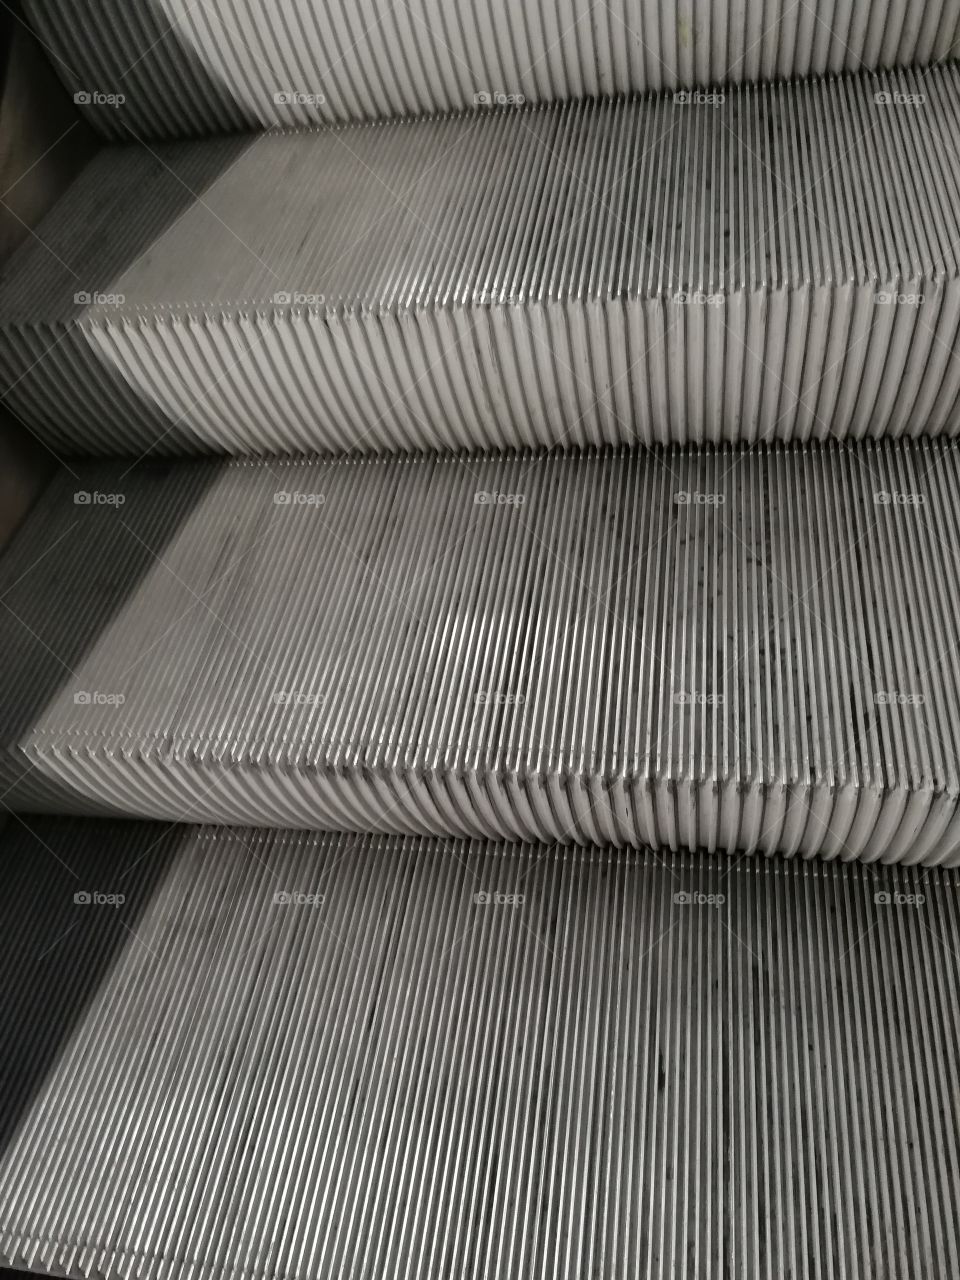 stairs of subway